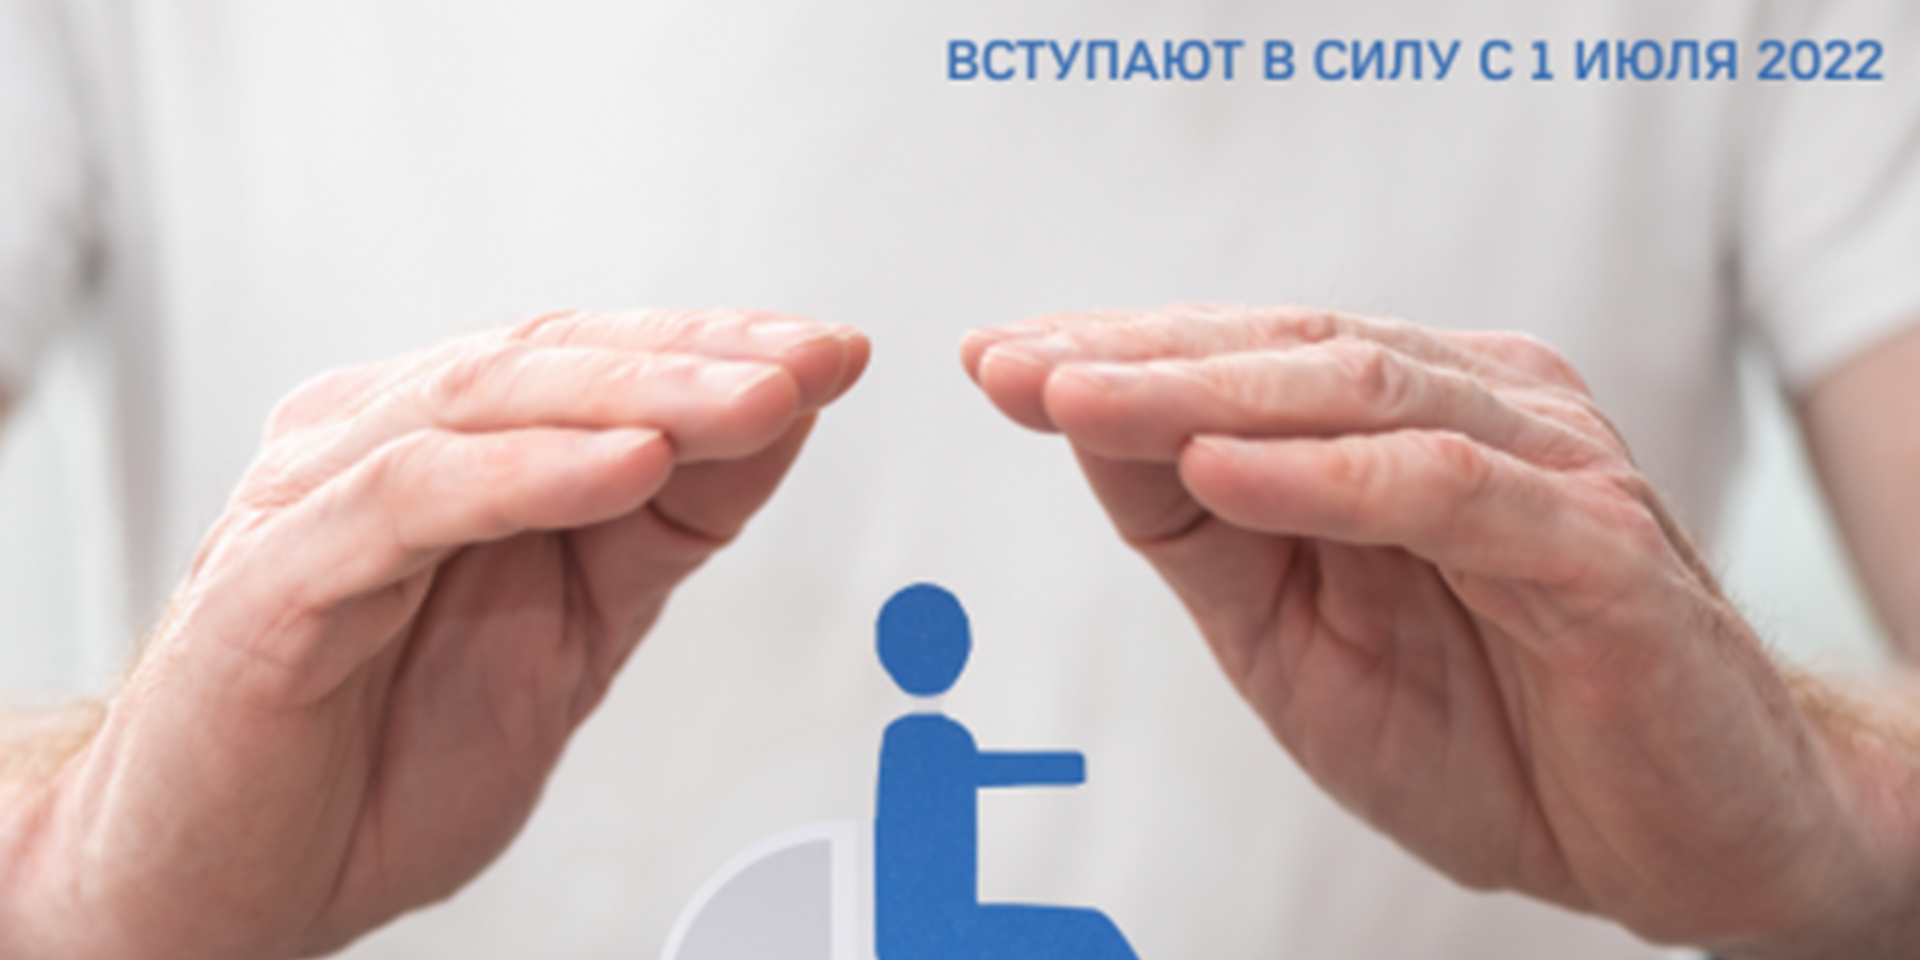 15.07.2022 Москва. С 1 июля 2022 вступили в силу новые правила признания лица инвалидом